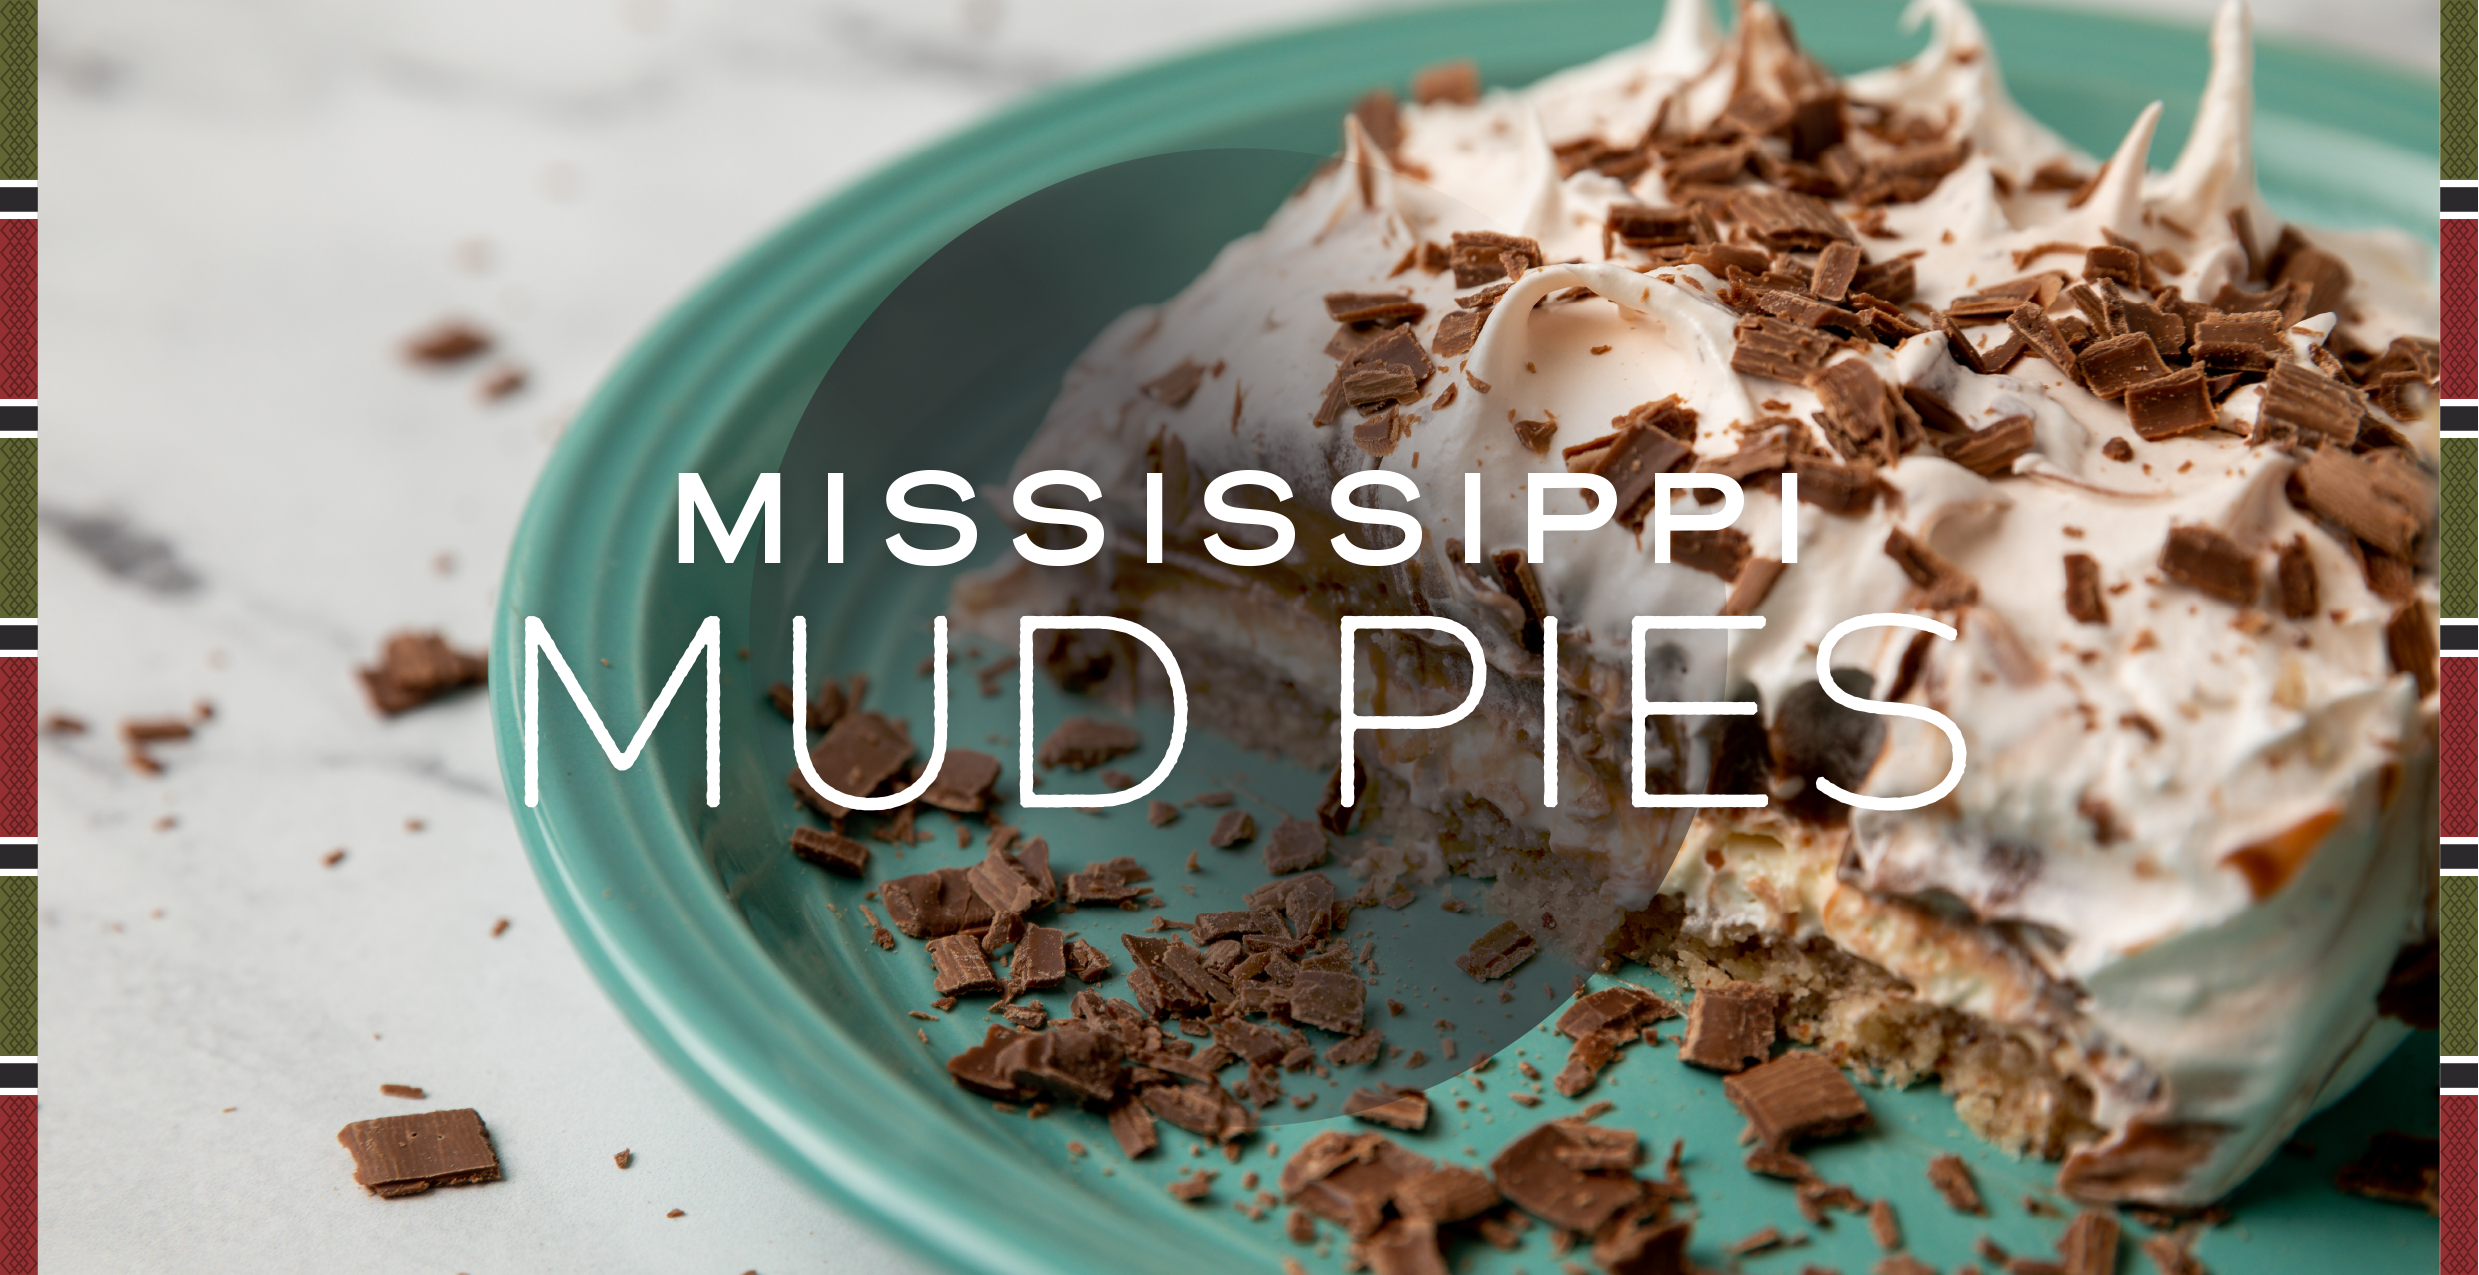 Raintree Mississippi Mud Pies